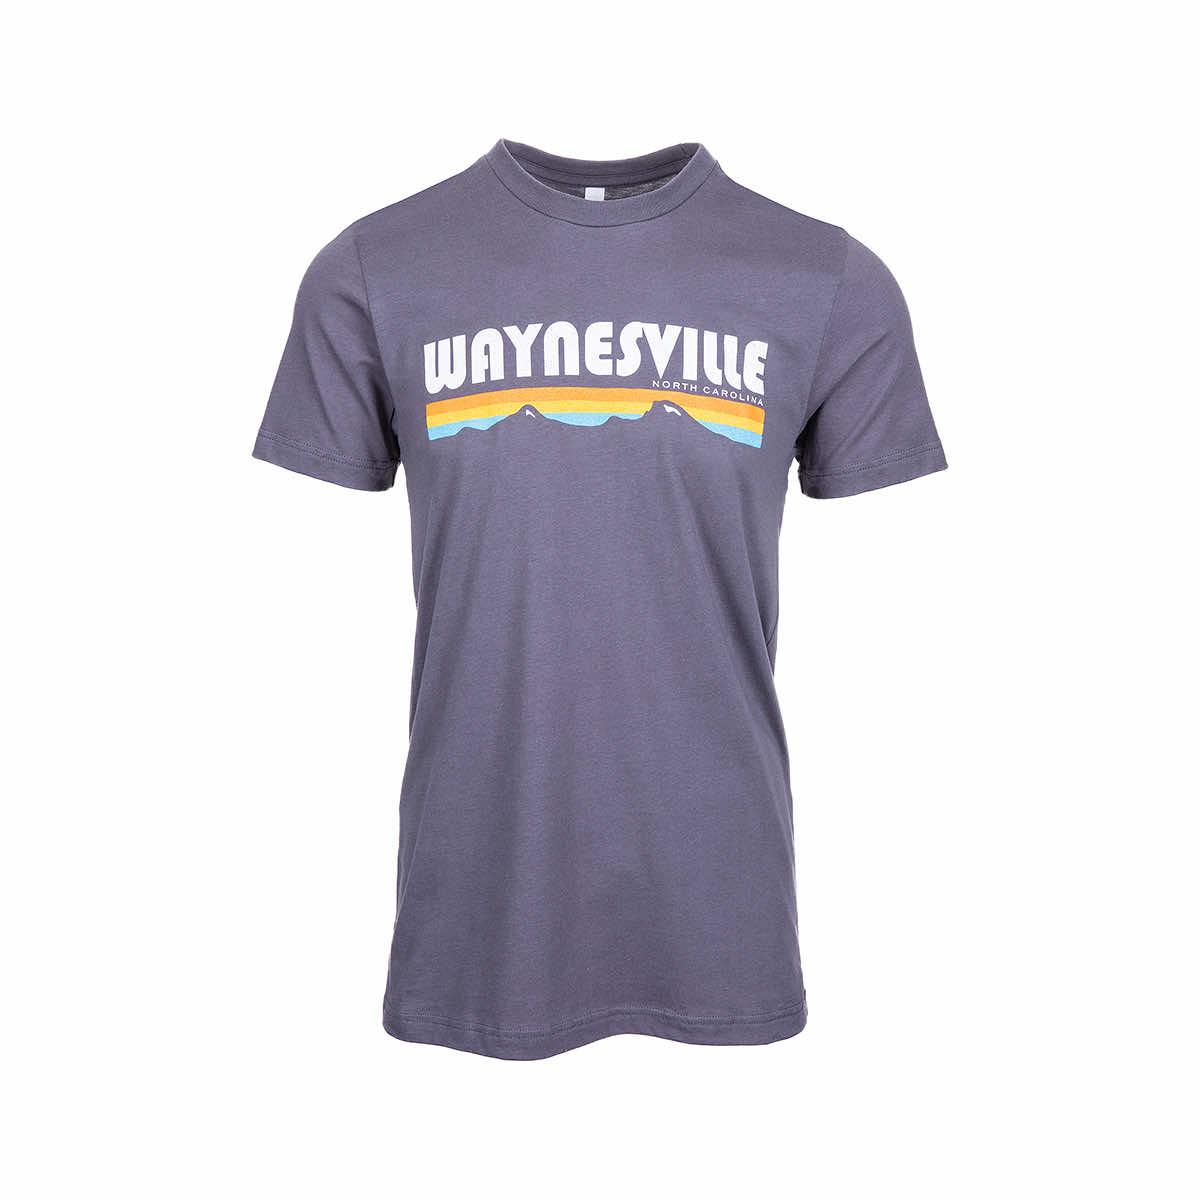  Waynesville Mountain Profile Short Sleeve T- Shirt